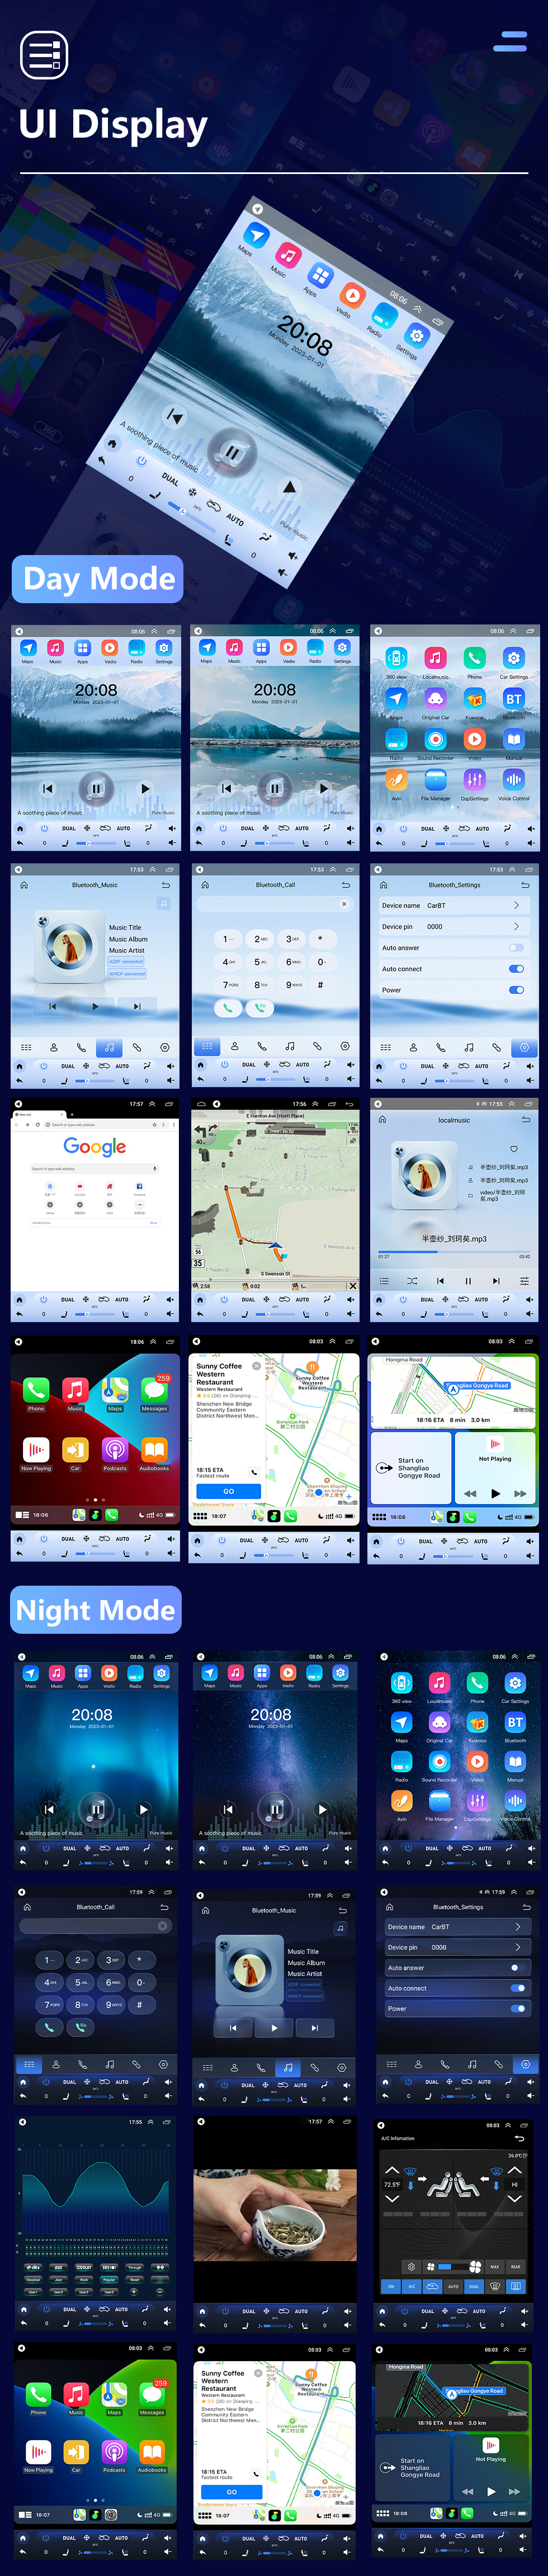 Seicane OEM 9,7-дюймовый Android 10.0 для Chevy Chevrolet Classic Cruze 2008-2013 GPS-навигация Радио с сенсорным экраном Поддержка Bluetooth WIFI TPMS Carplay